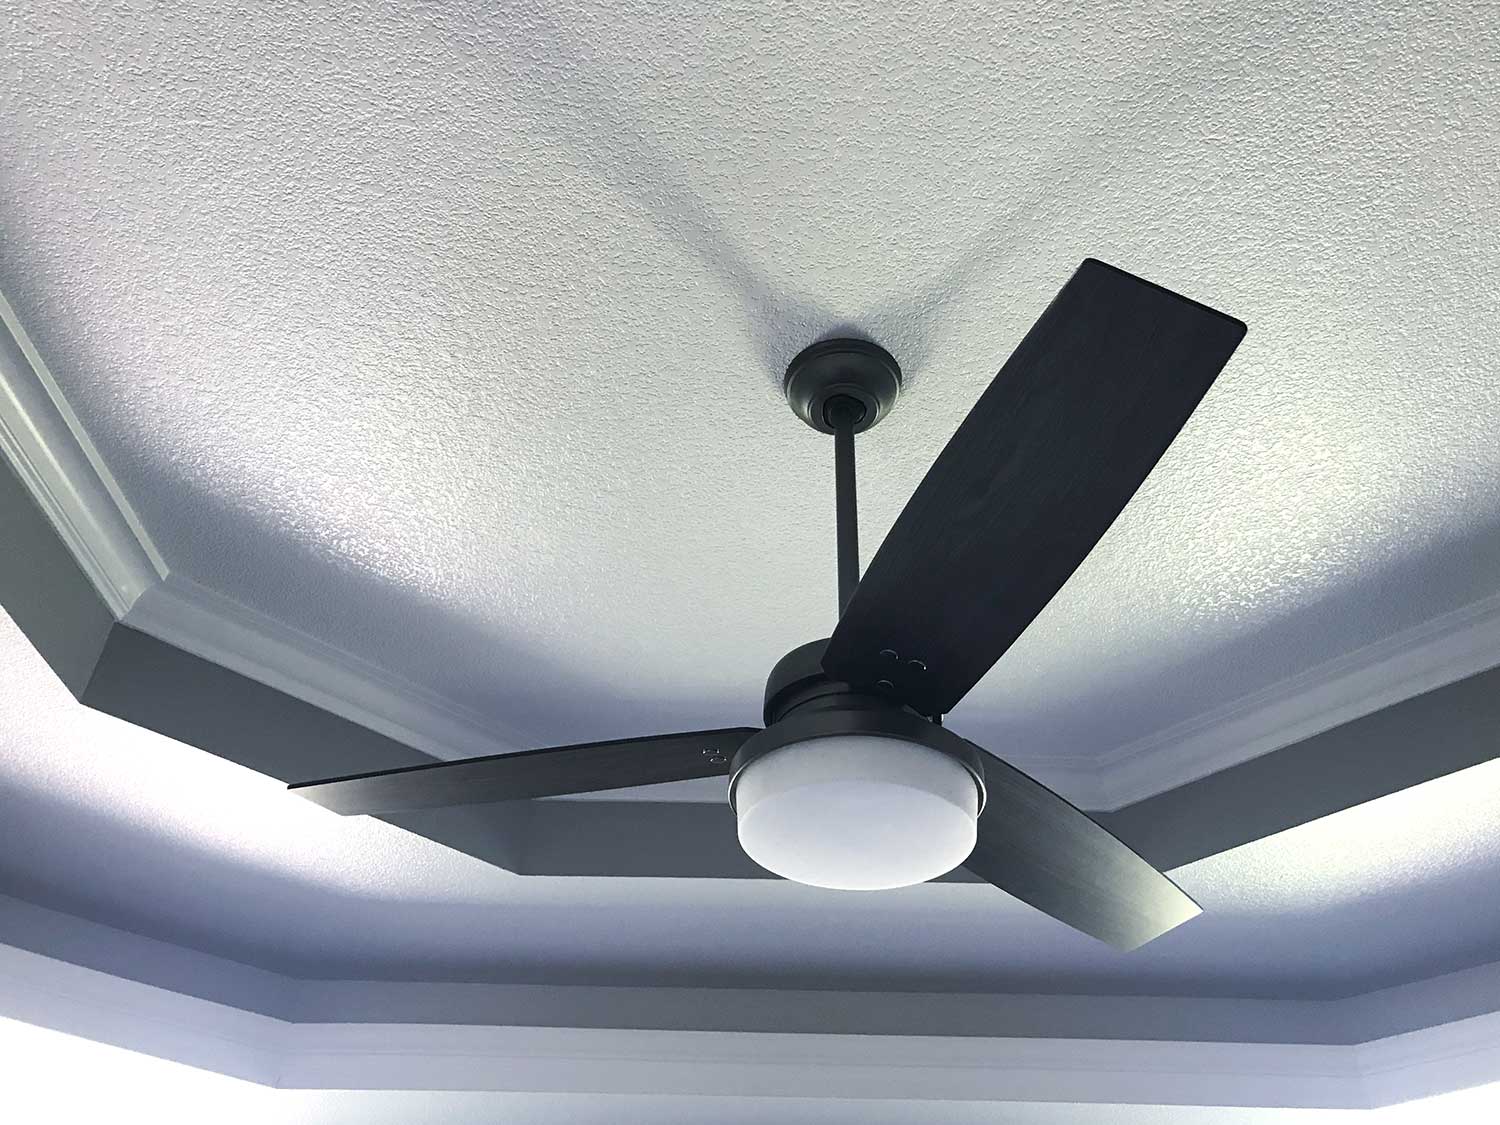 Tray bedroom ceiling fan